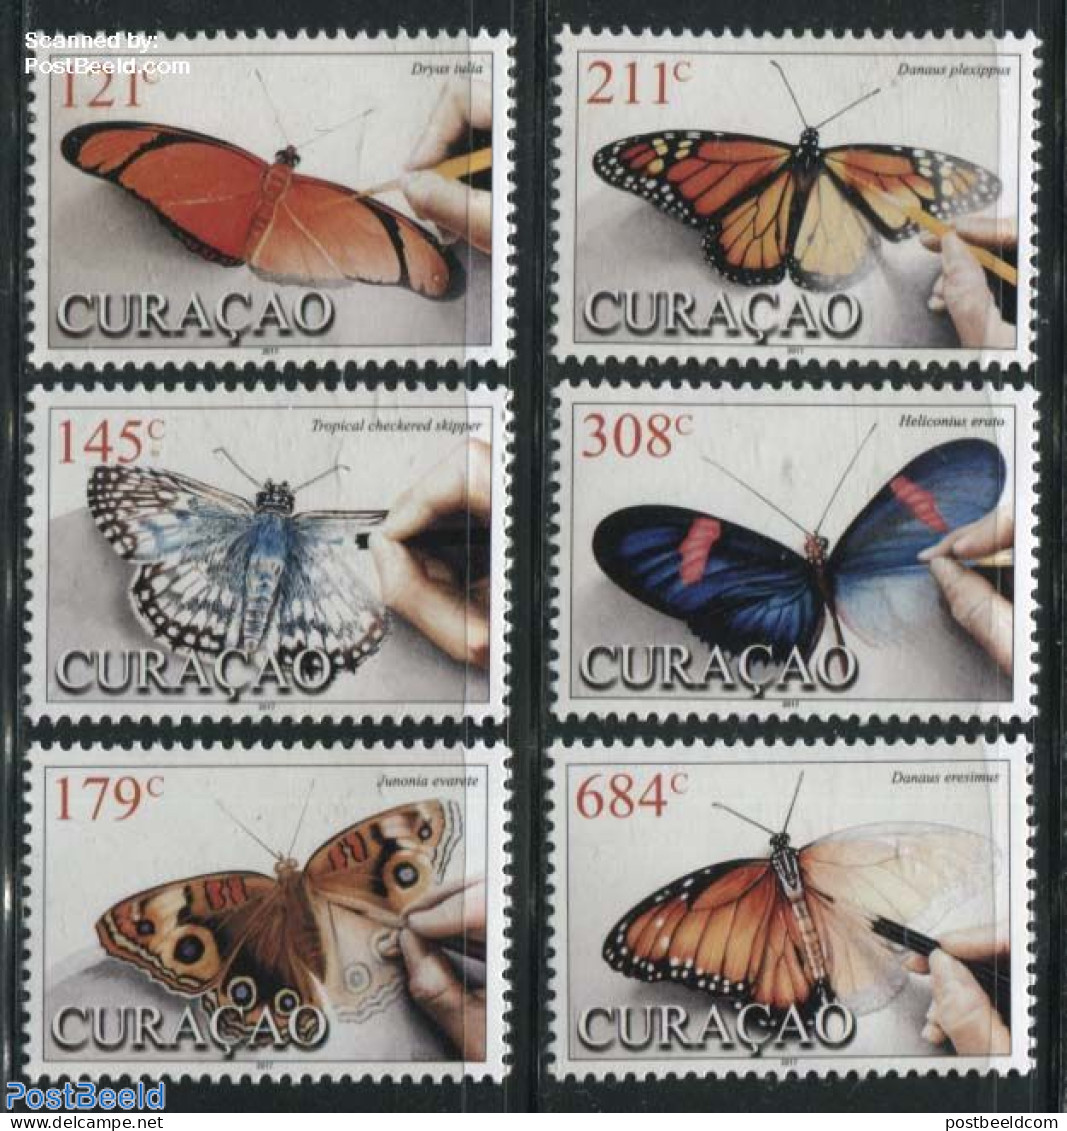 Curaçao 2017 Butterflies 6v, Mint NH, Nature - Butterflies - Curacao, Netherlands Antilles, Aruba